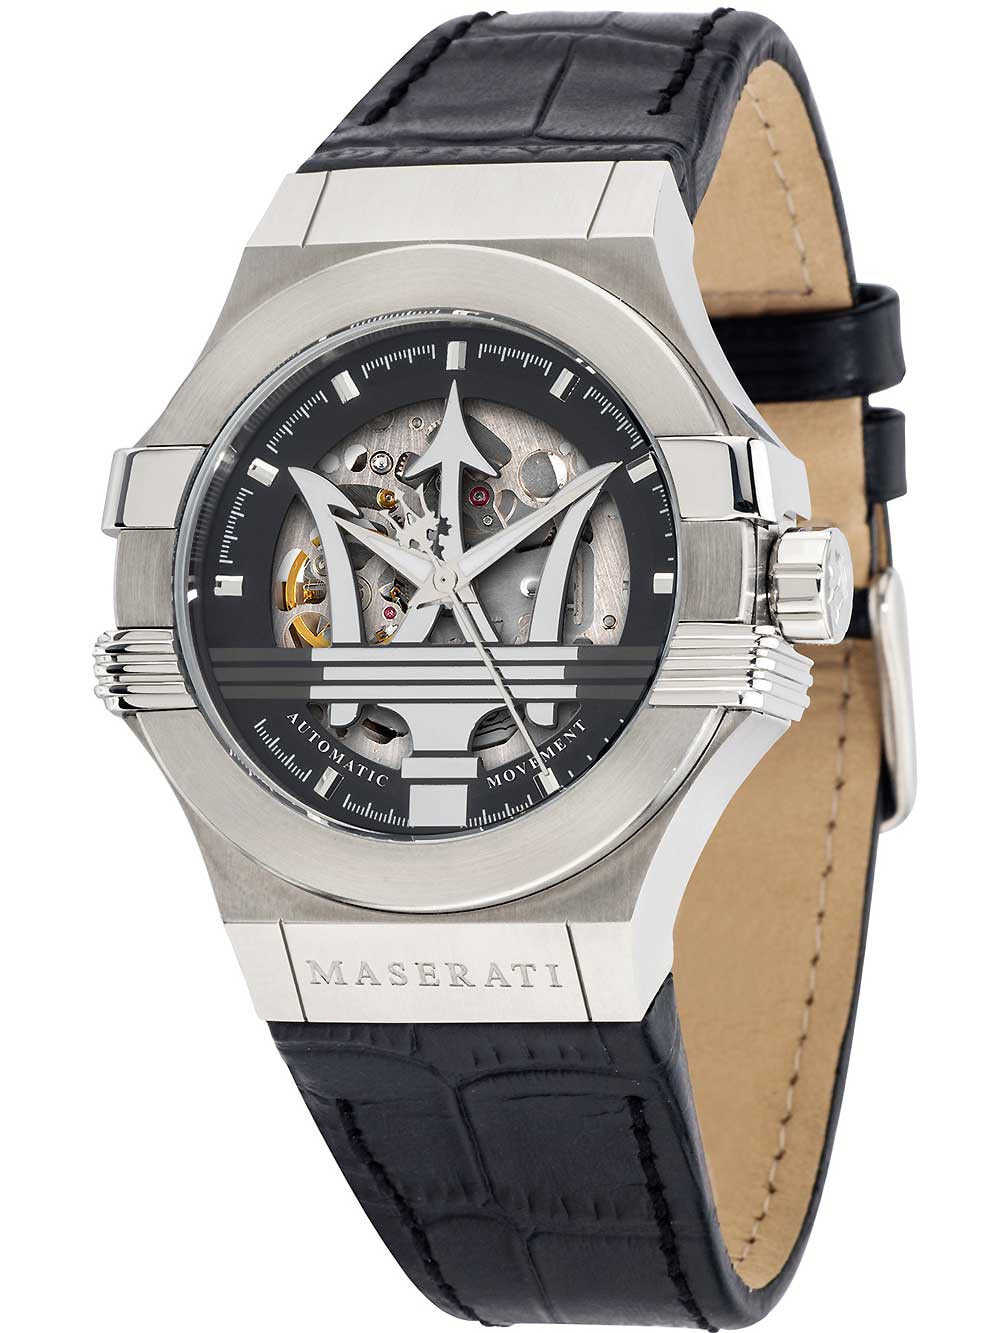 Мужские наручные часы с черным кожаным ремешком Maserati R8821108038 Potenza automatic watch 42mm 10ATM